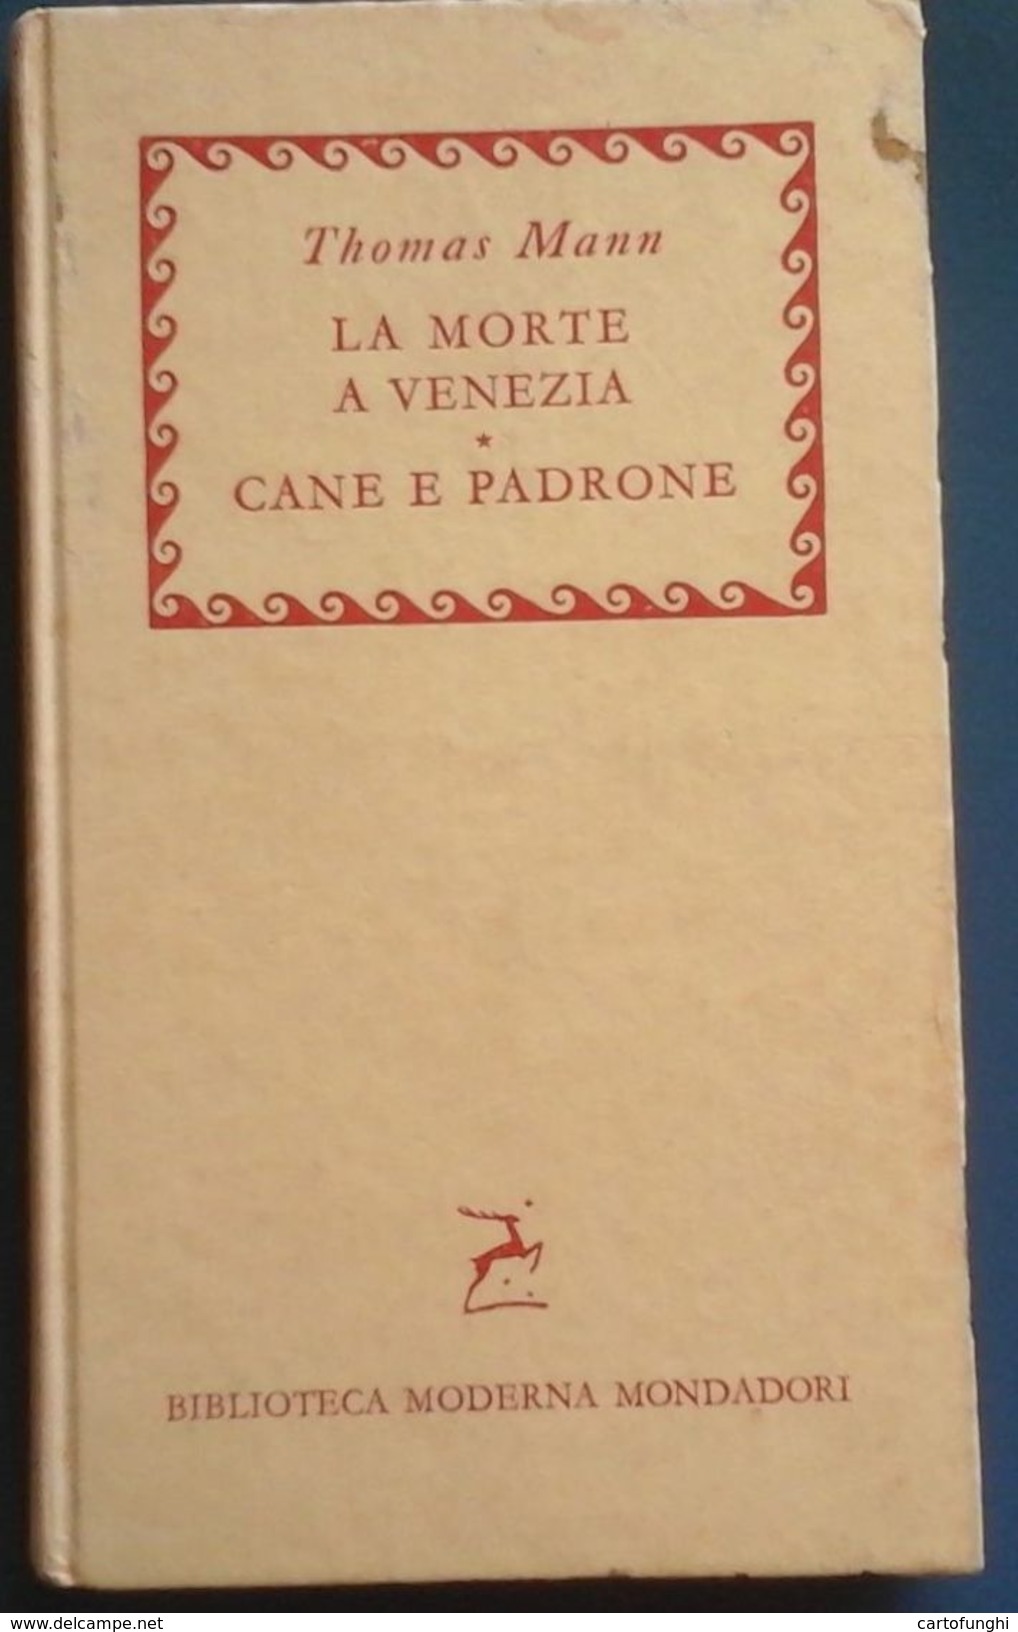 S THOMAS MANN LA MORTE A VENEZIA(E. CASTELLANI ); CANE E PADRONE (L. MAZZUCCHETTI) SPEDIZIONE GRATIS - Grote Schrijvers